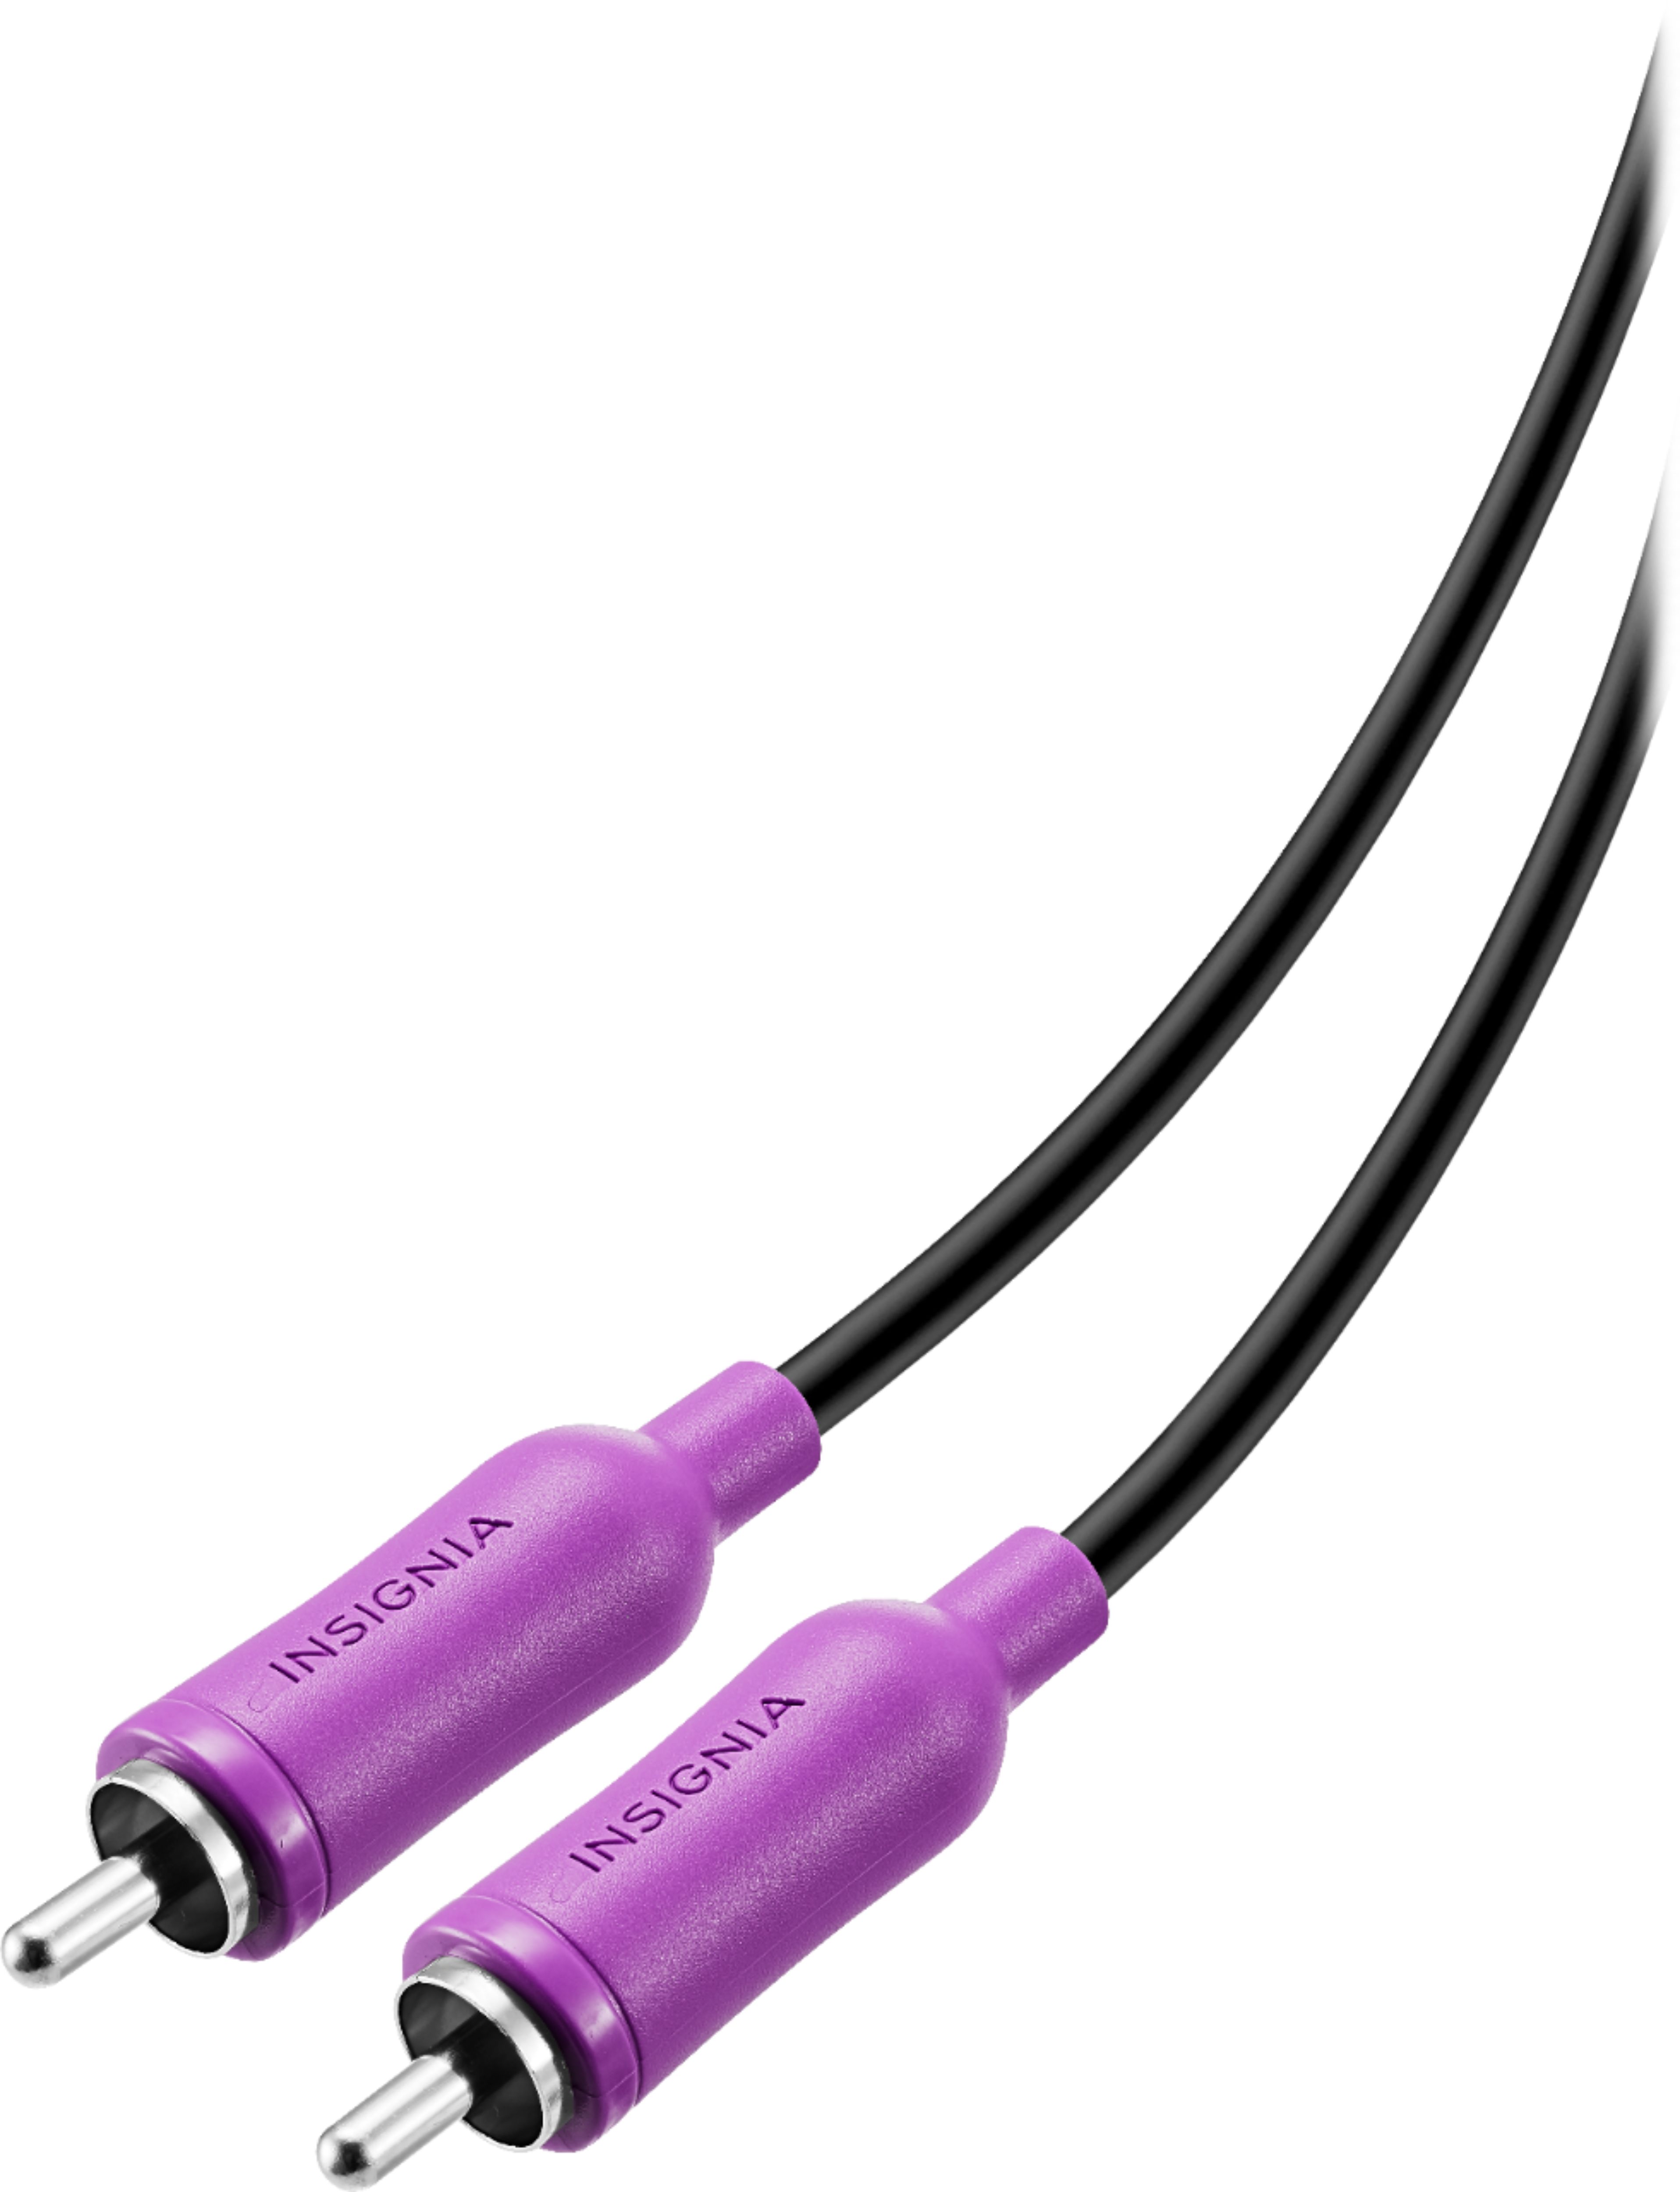 15' Subwoofer Cable Black/Purple NS-HZ534